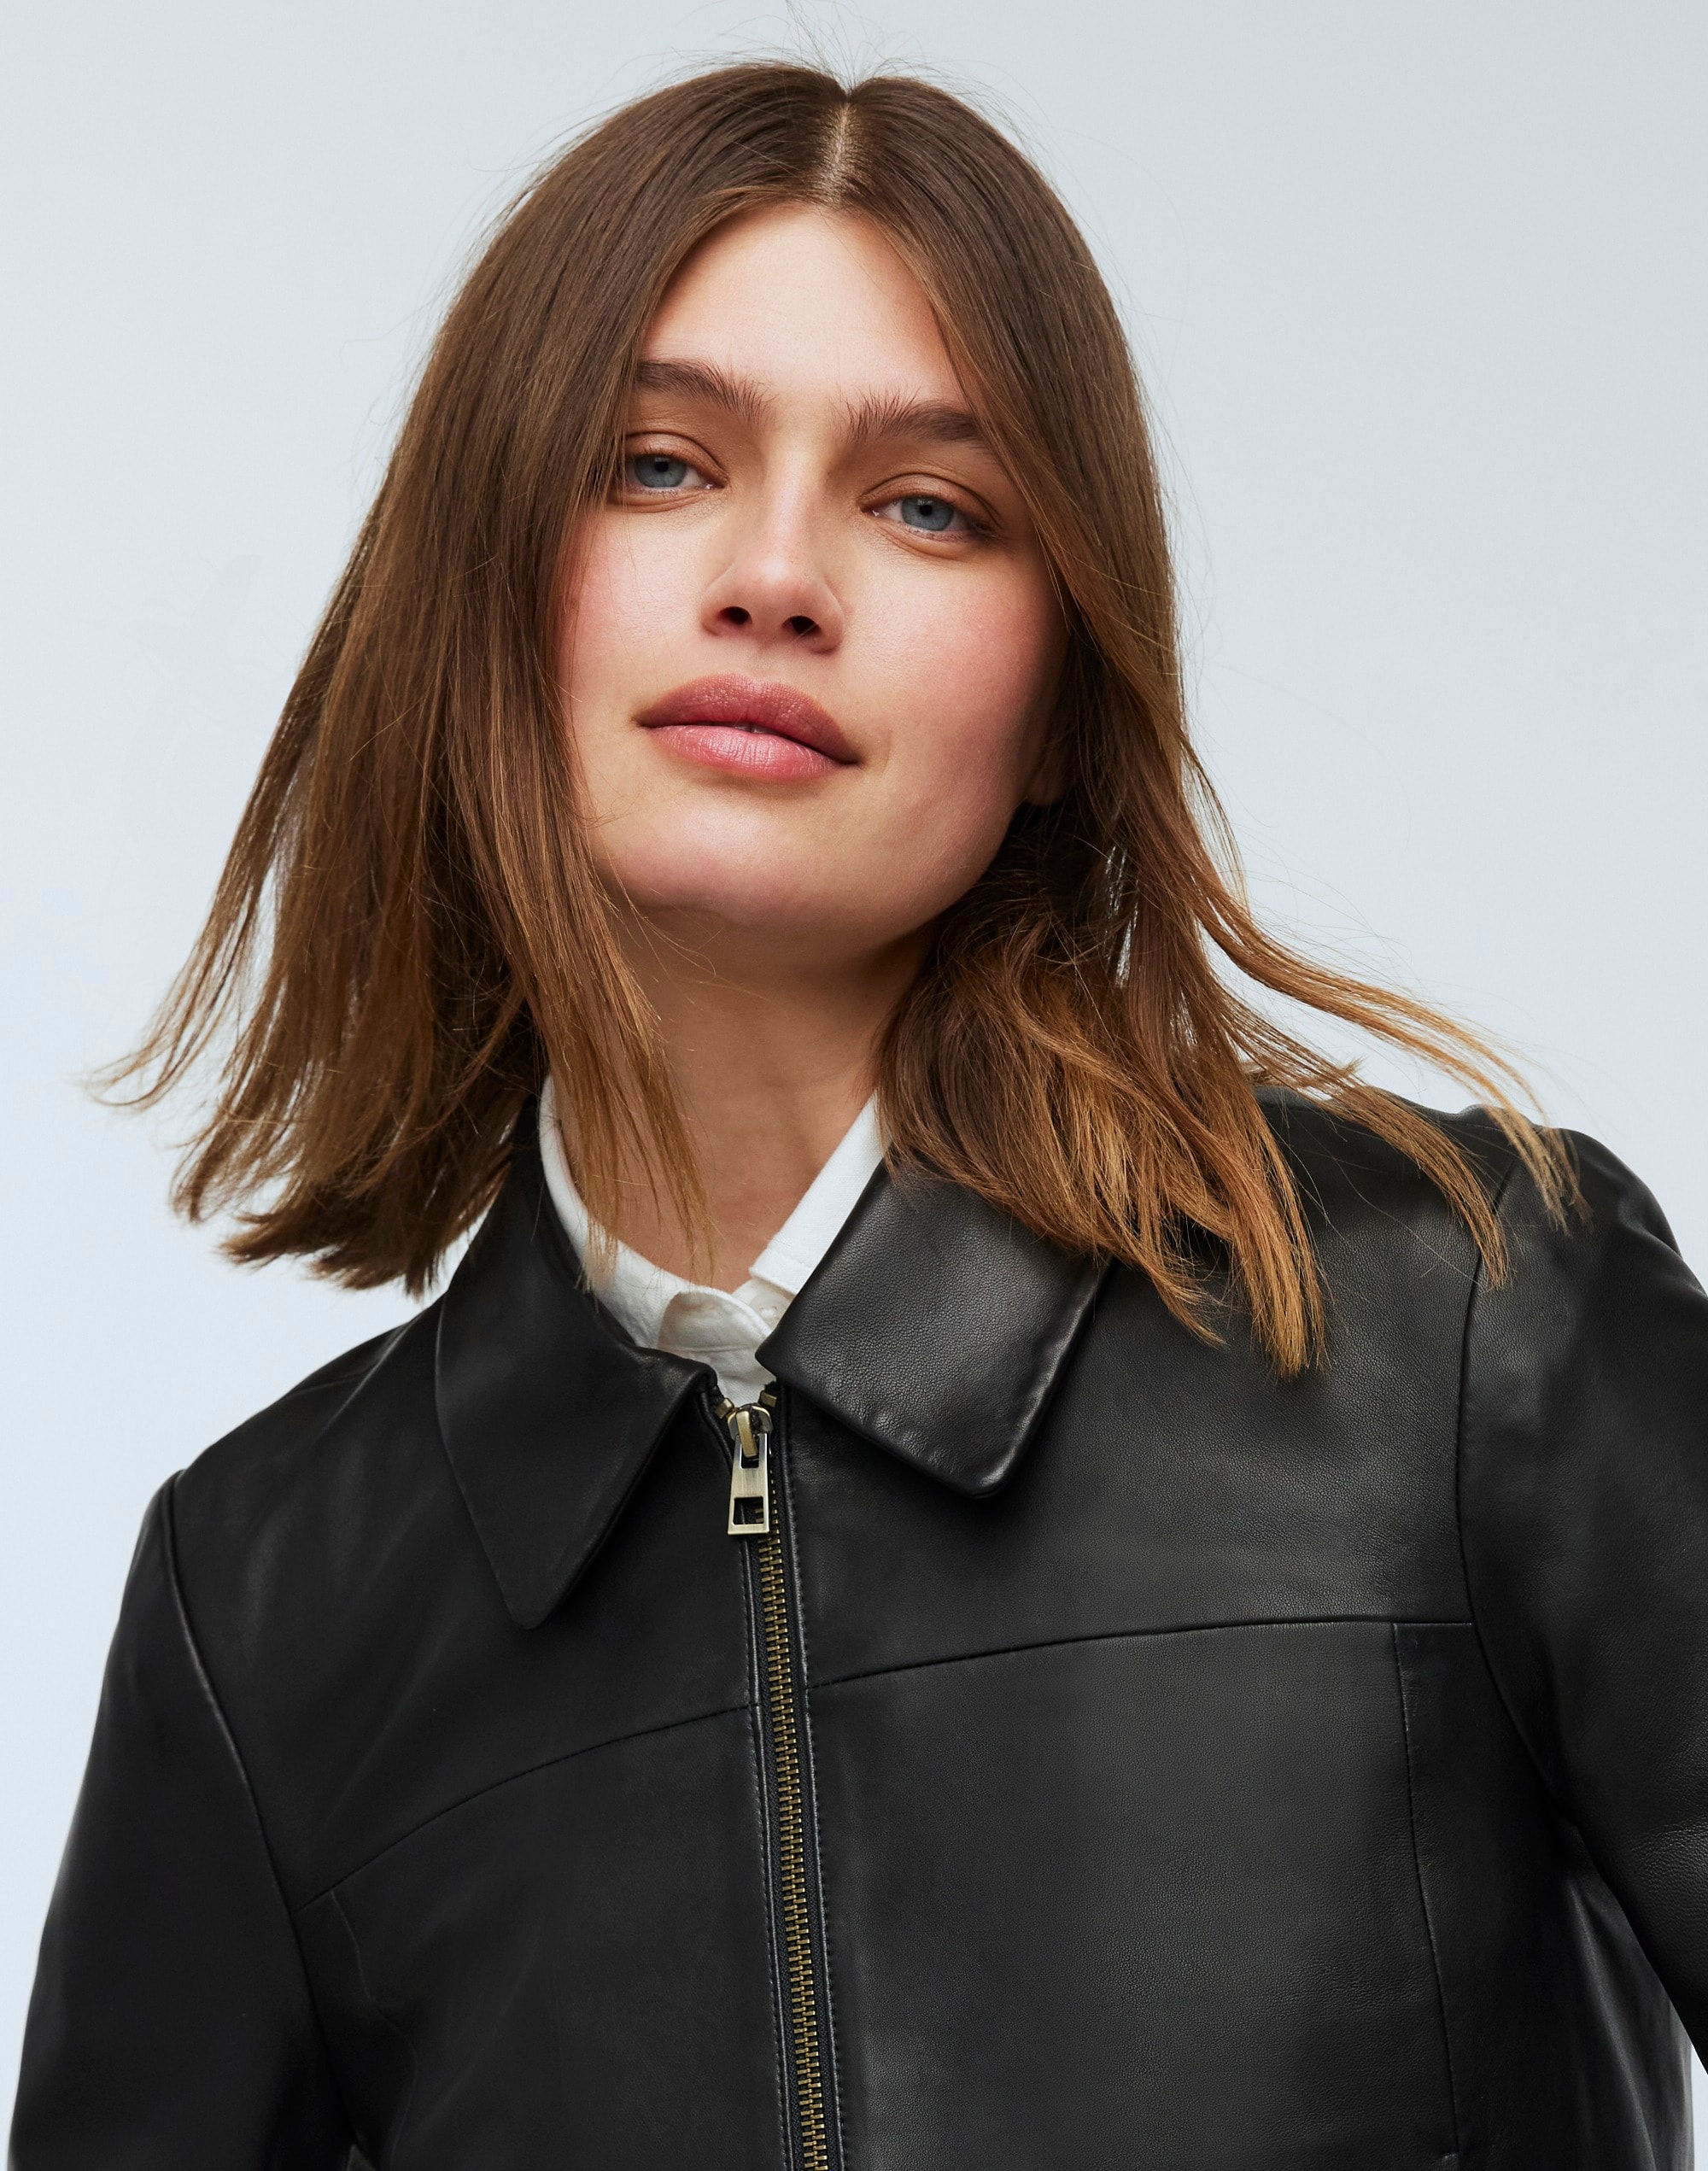 Shrunken Zip-Front Jacket Leather